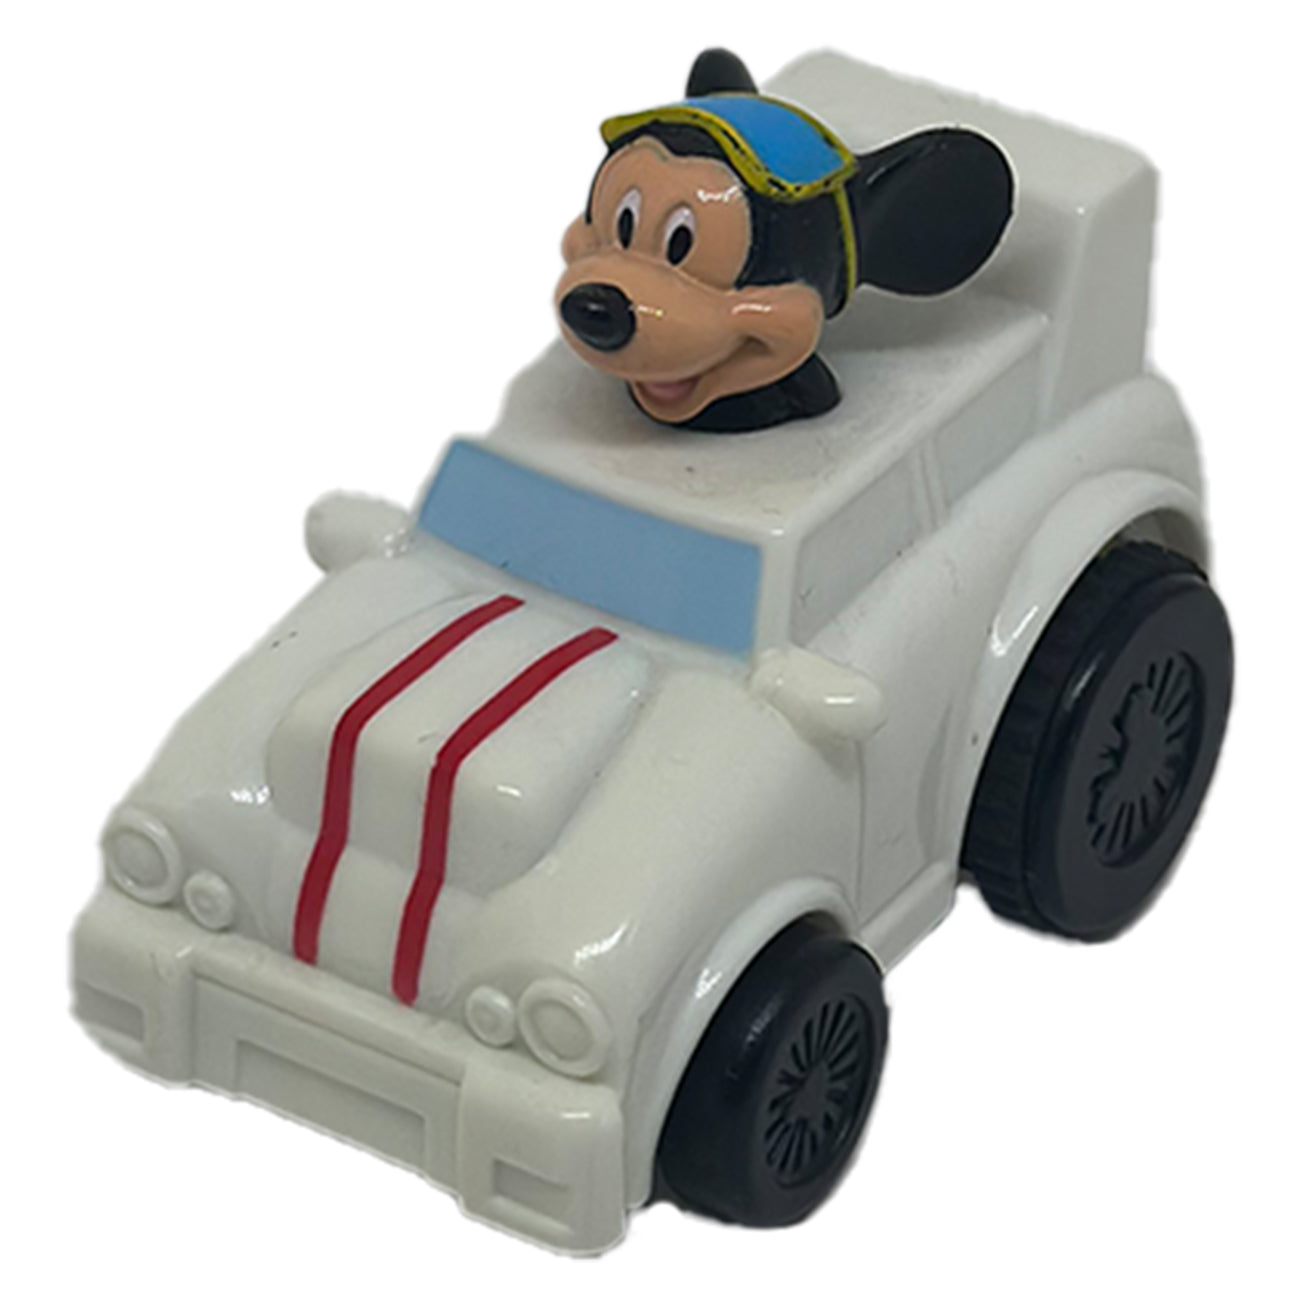 Disney - Mickey Mouse car miniature 2007 - figure 7cm 